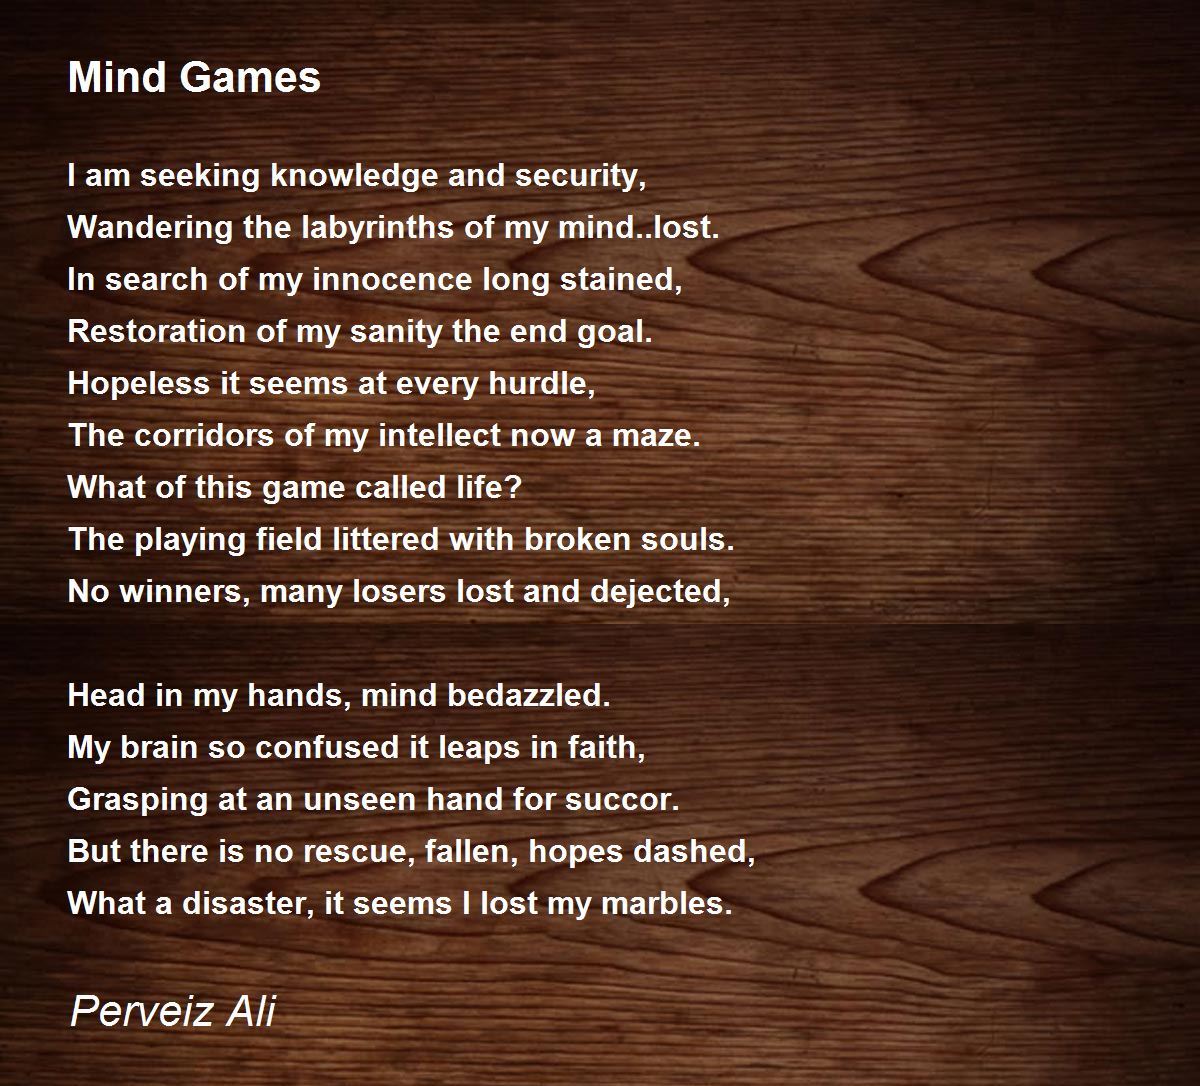 Mind Games - Mind Games Poem by Perveiz Ali